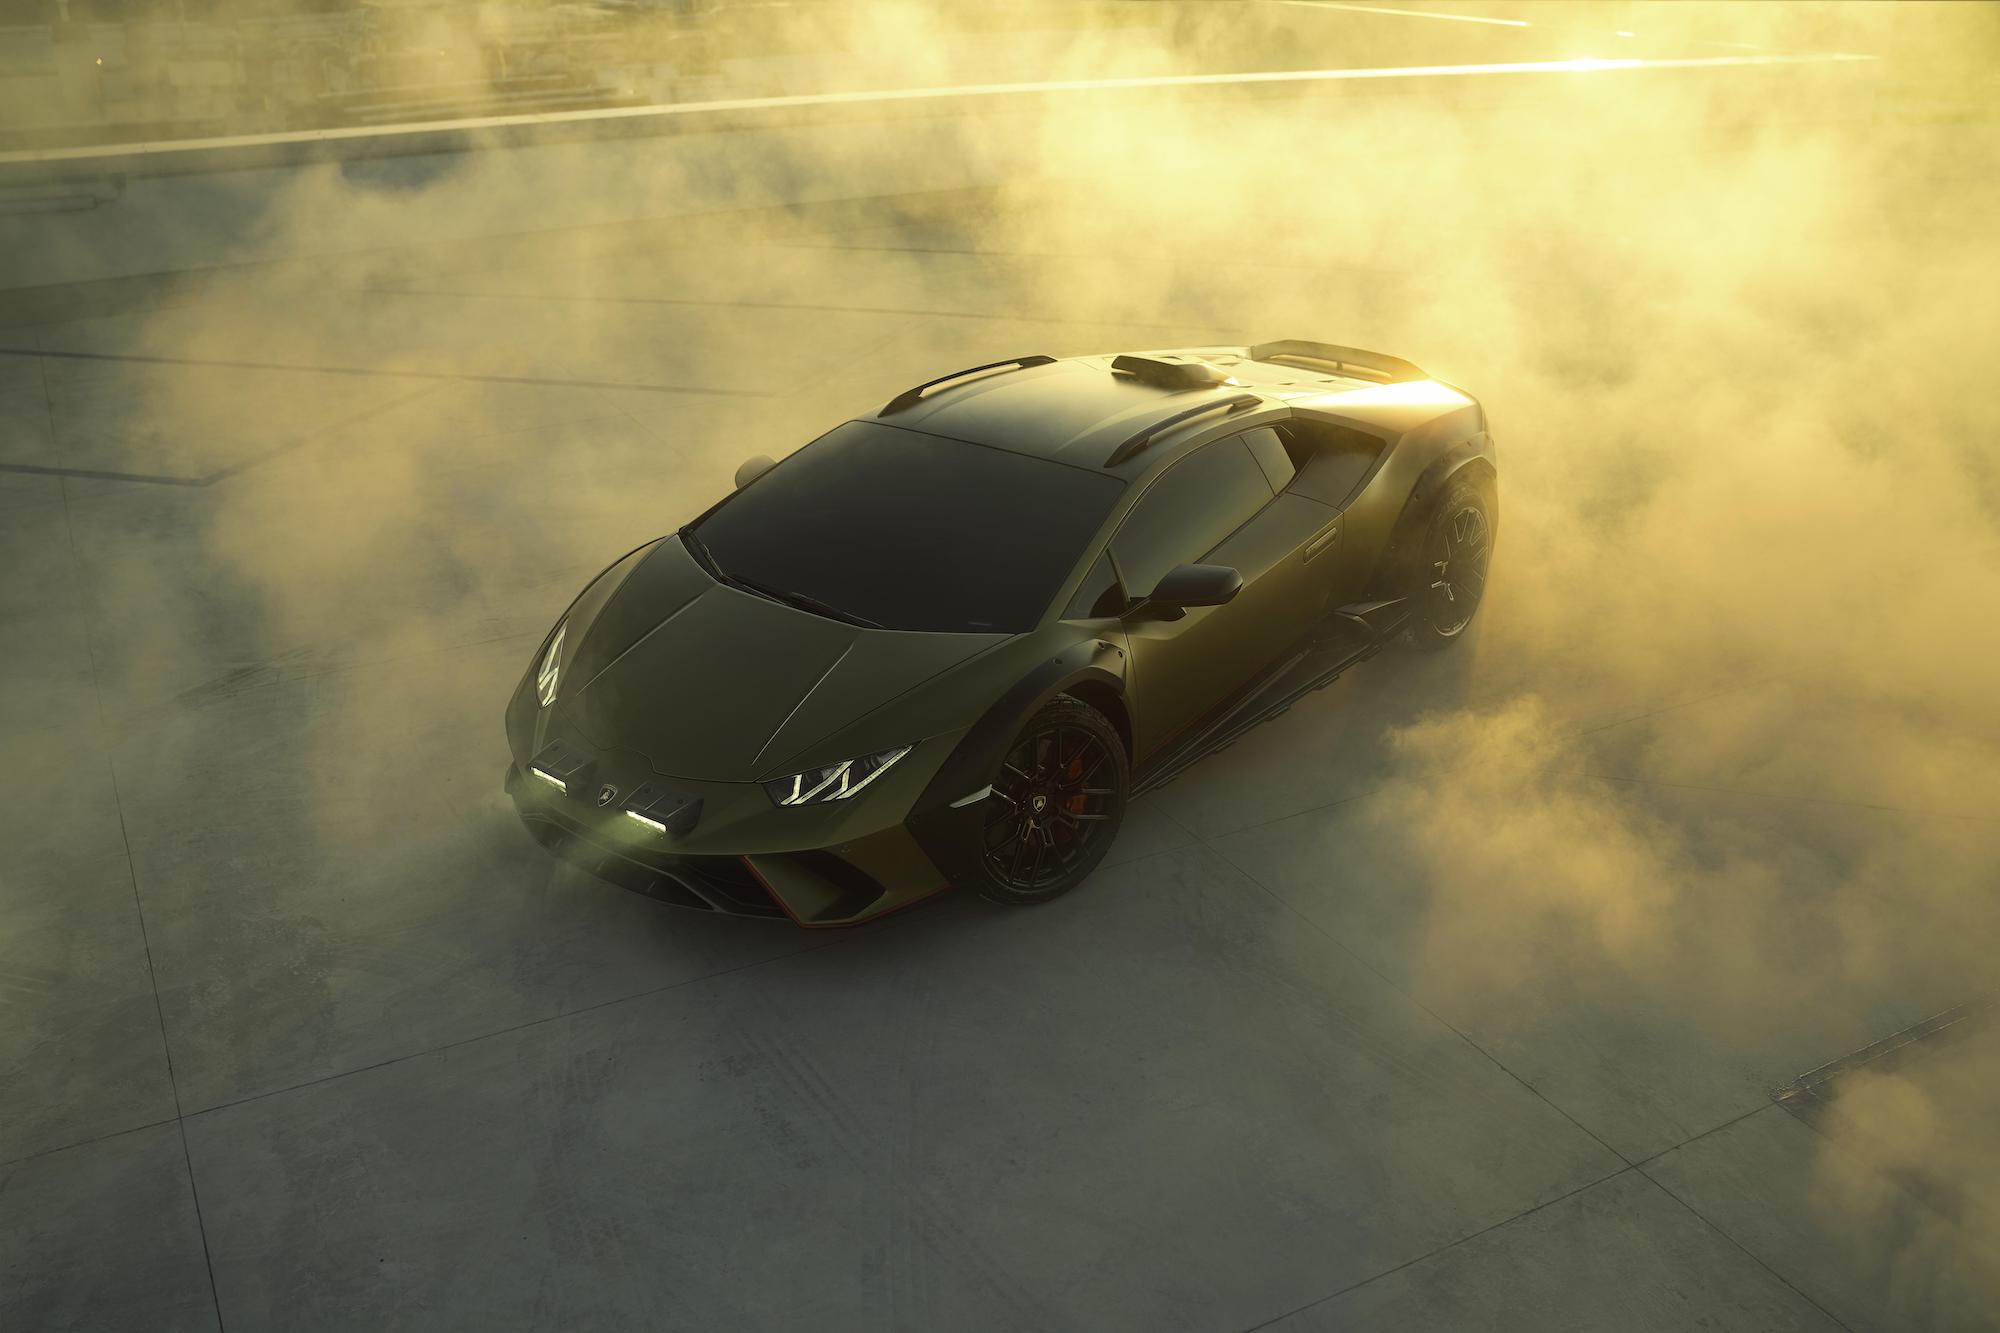 The Lamborghini Huracán Sterrato will be revealed on November 30.